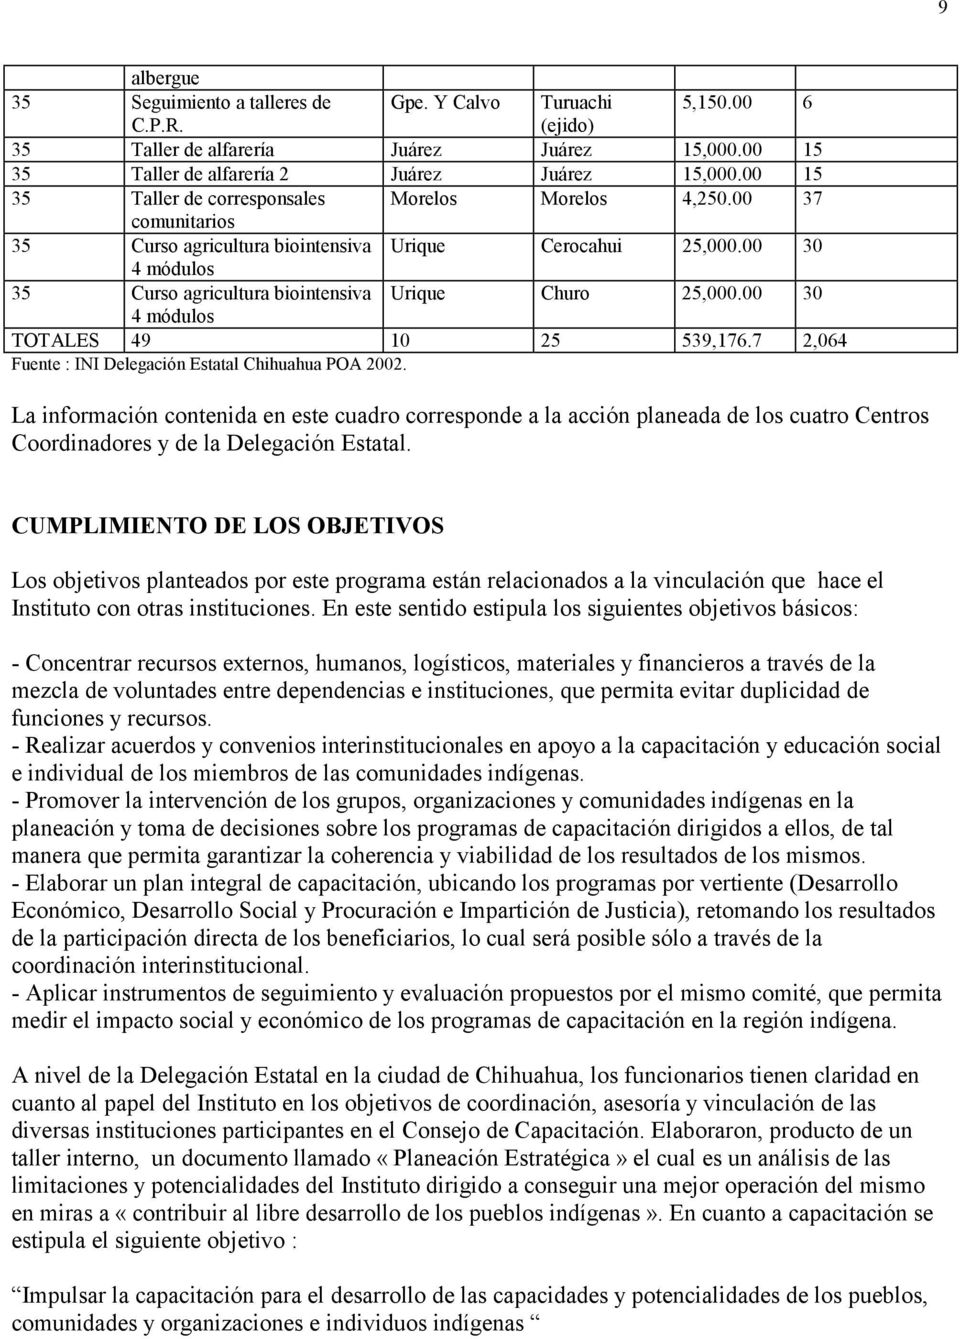 00 30 4 módulos 35 Curso agricultura biointensiva Urique Churo 25,000.00 30 4 módulos TOTALES 49 10 25 539,176.7 2,064 Fuente : INI Delegación Estatal Chihuahua POA 2002.